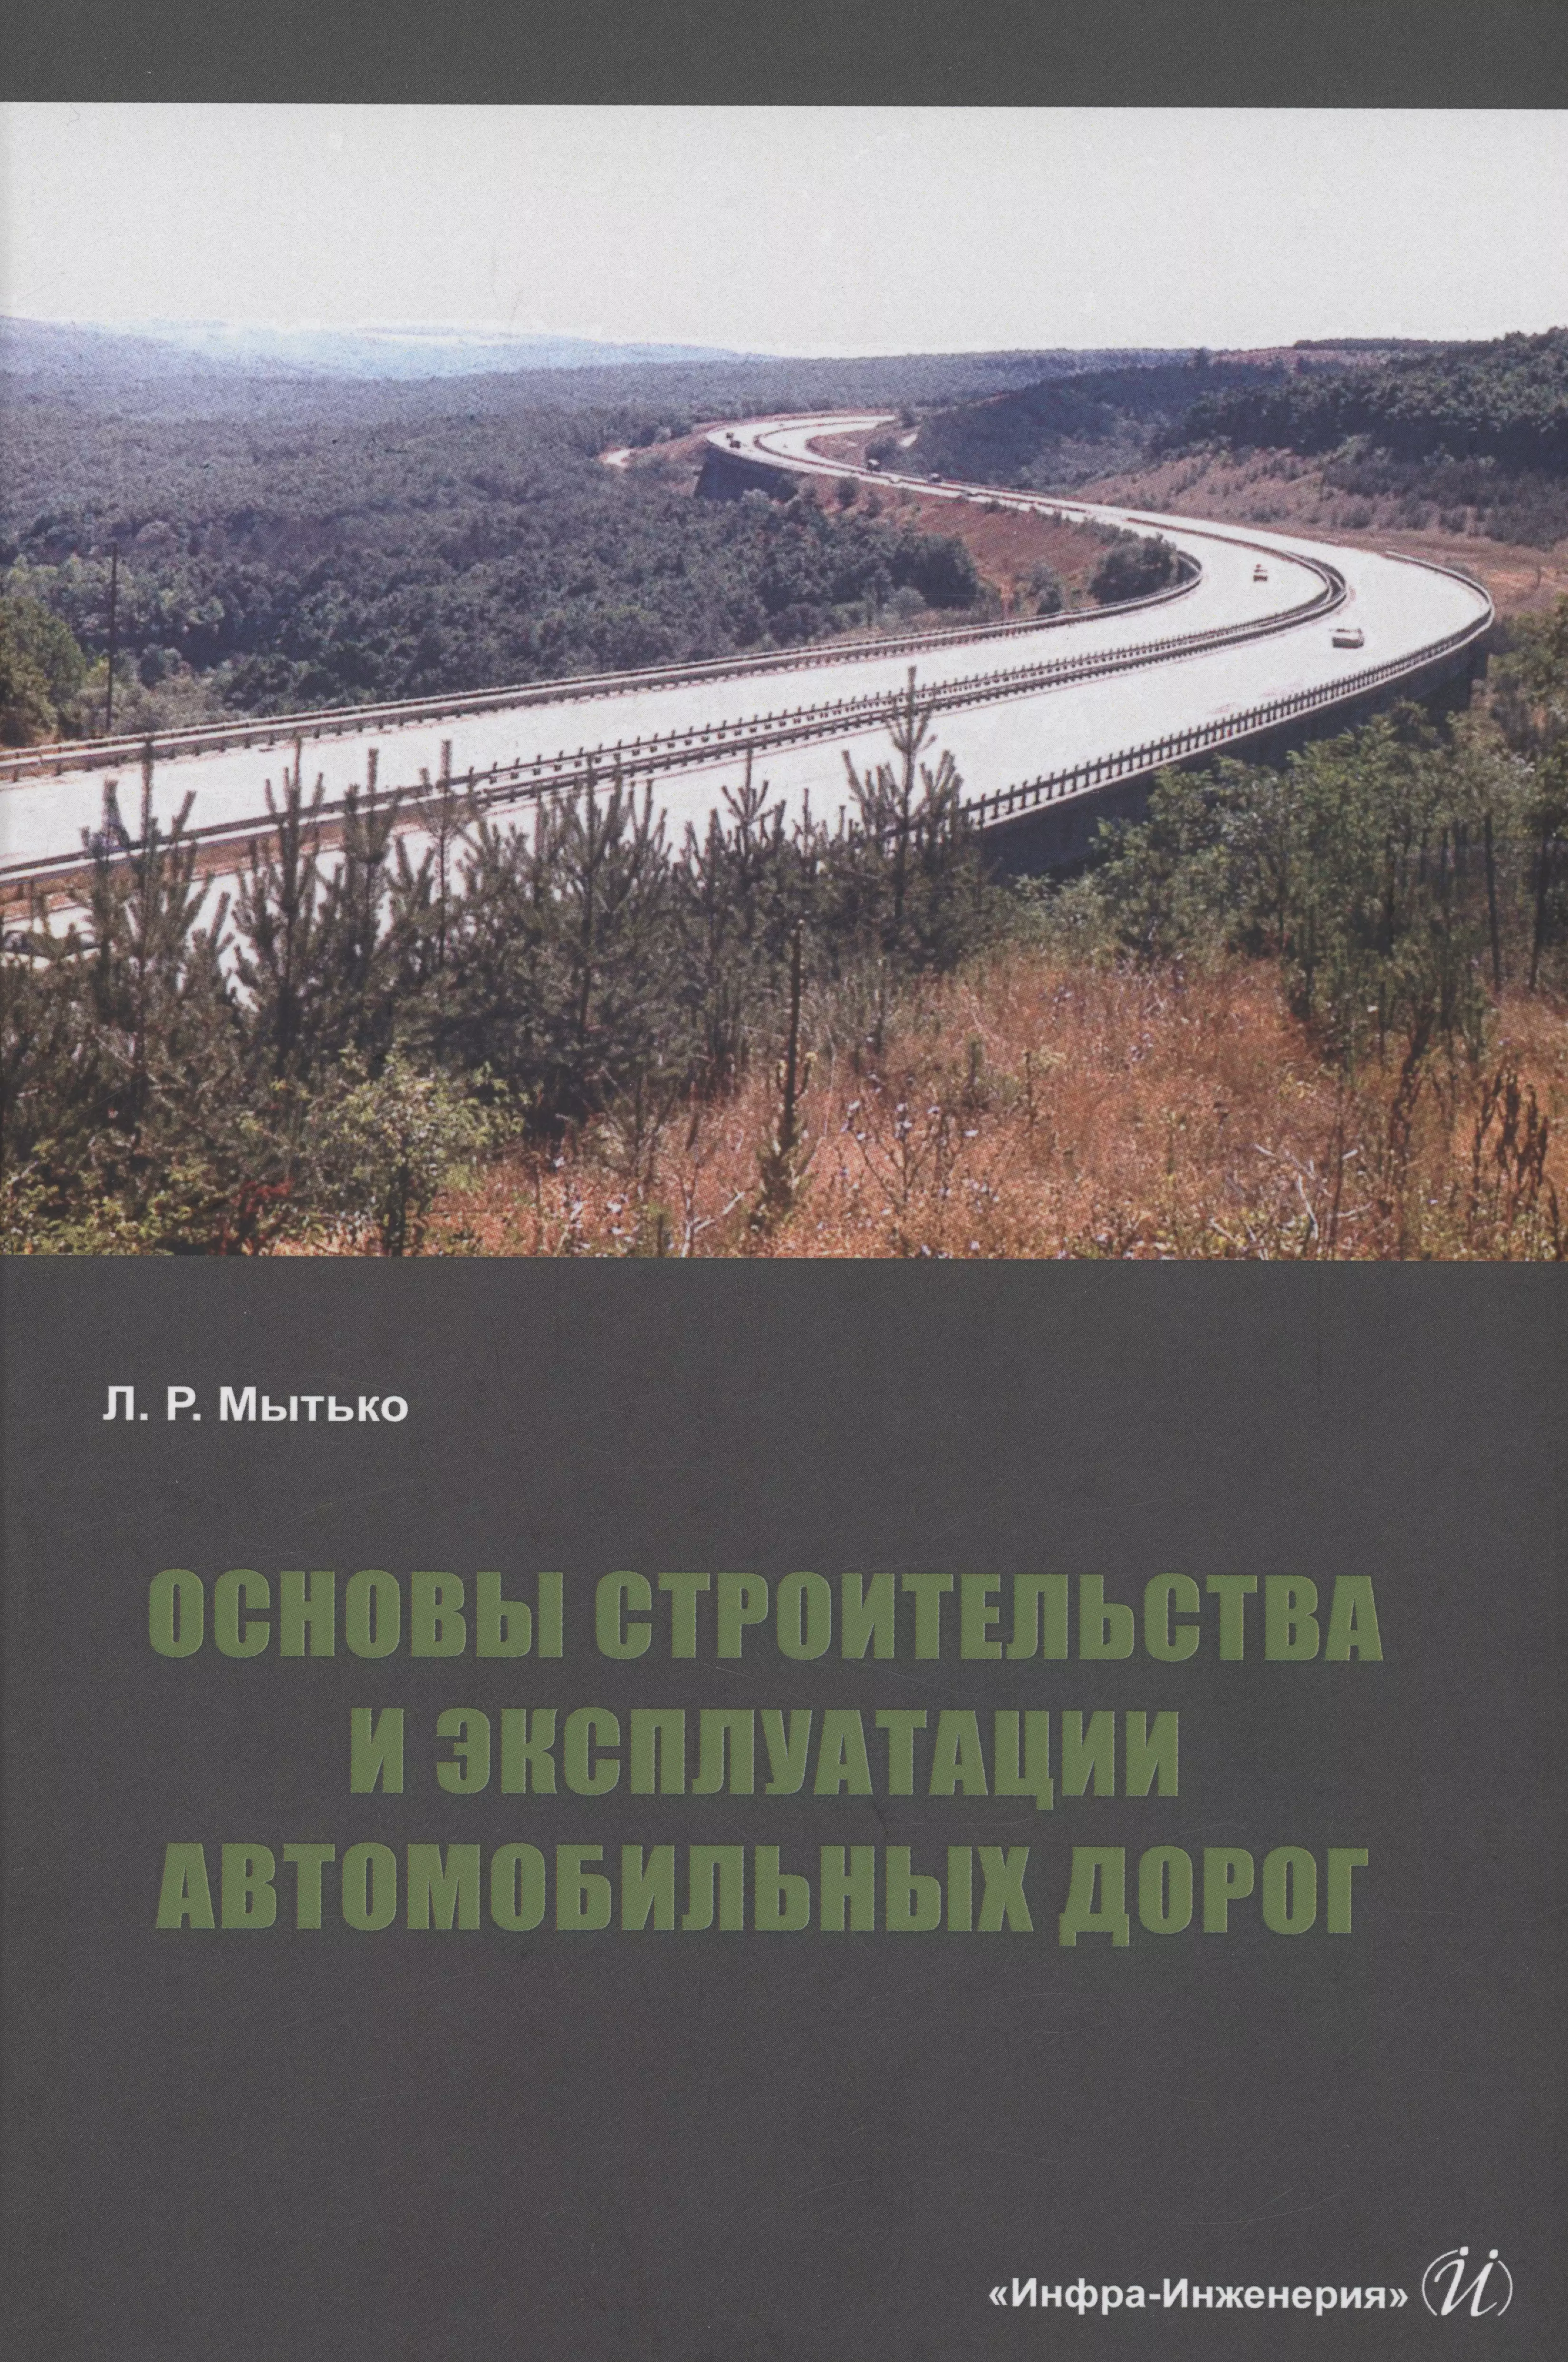 Мытько Леонид Романович - Основы строительства и эксплуатации автомобильных дорог